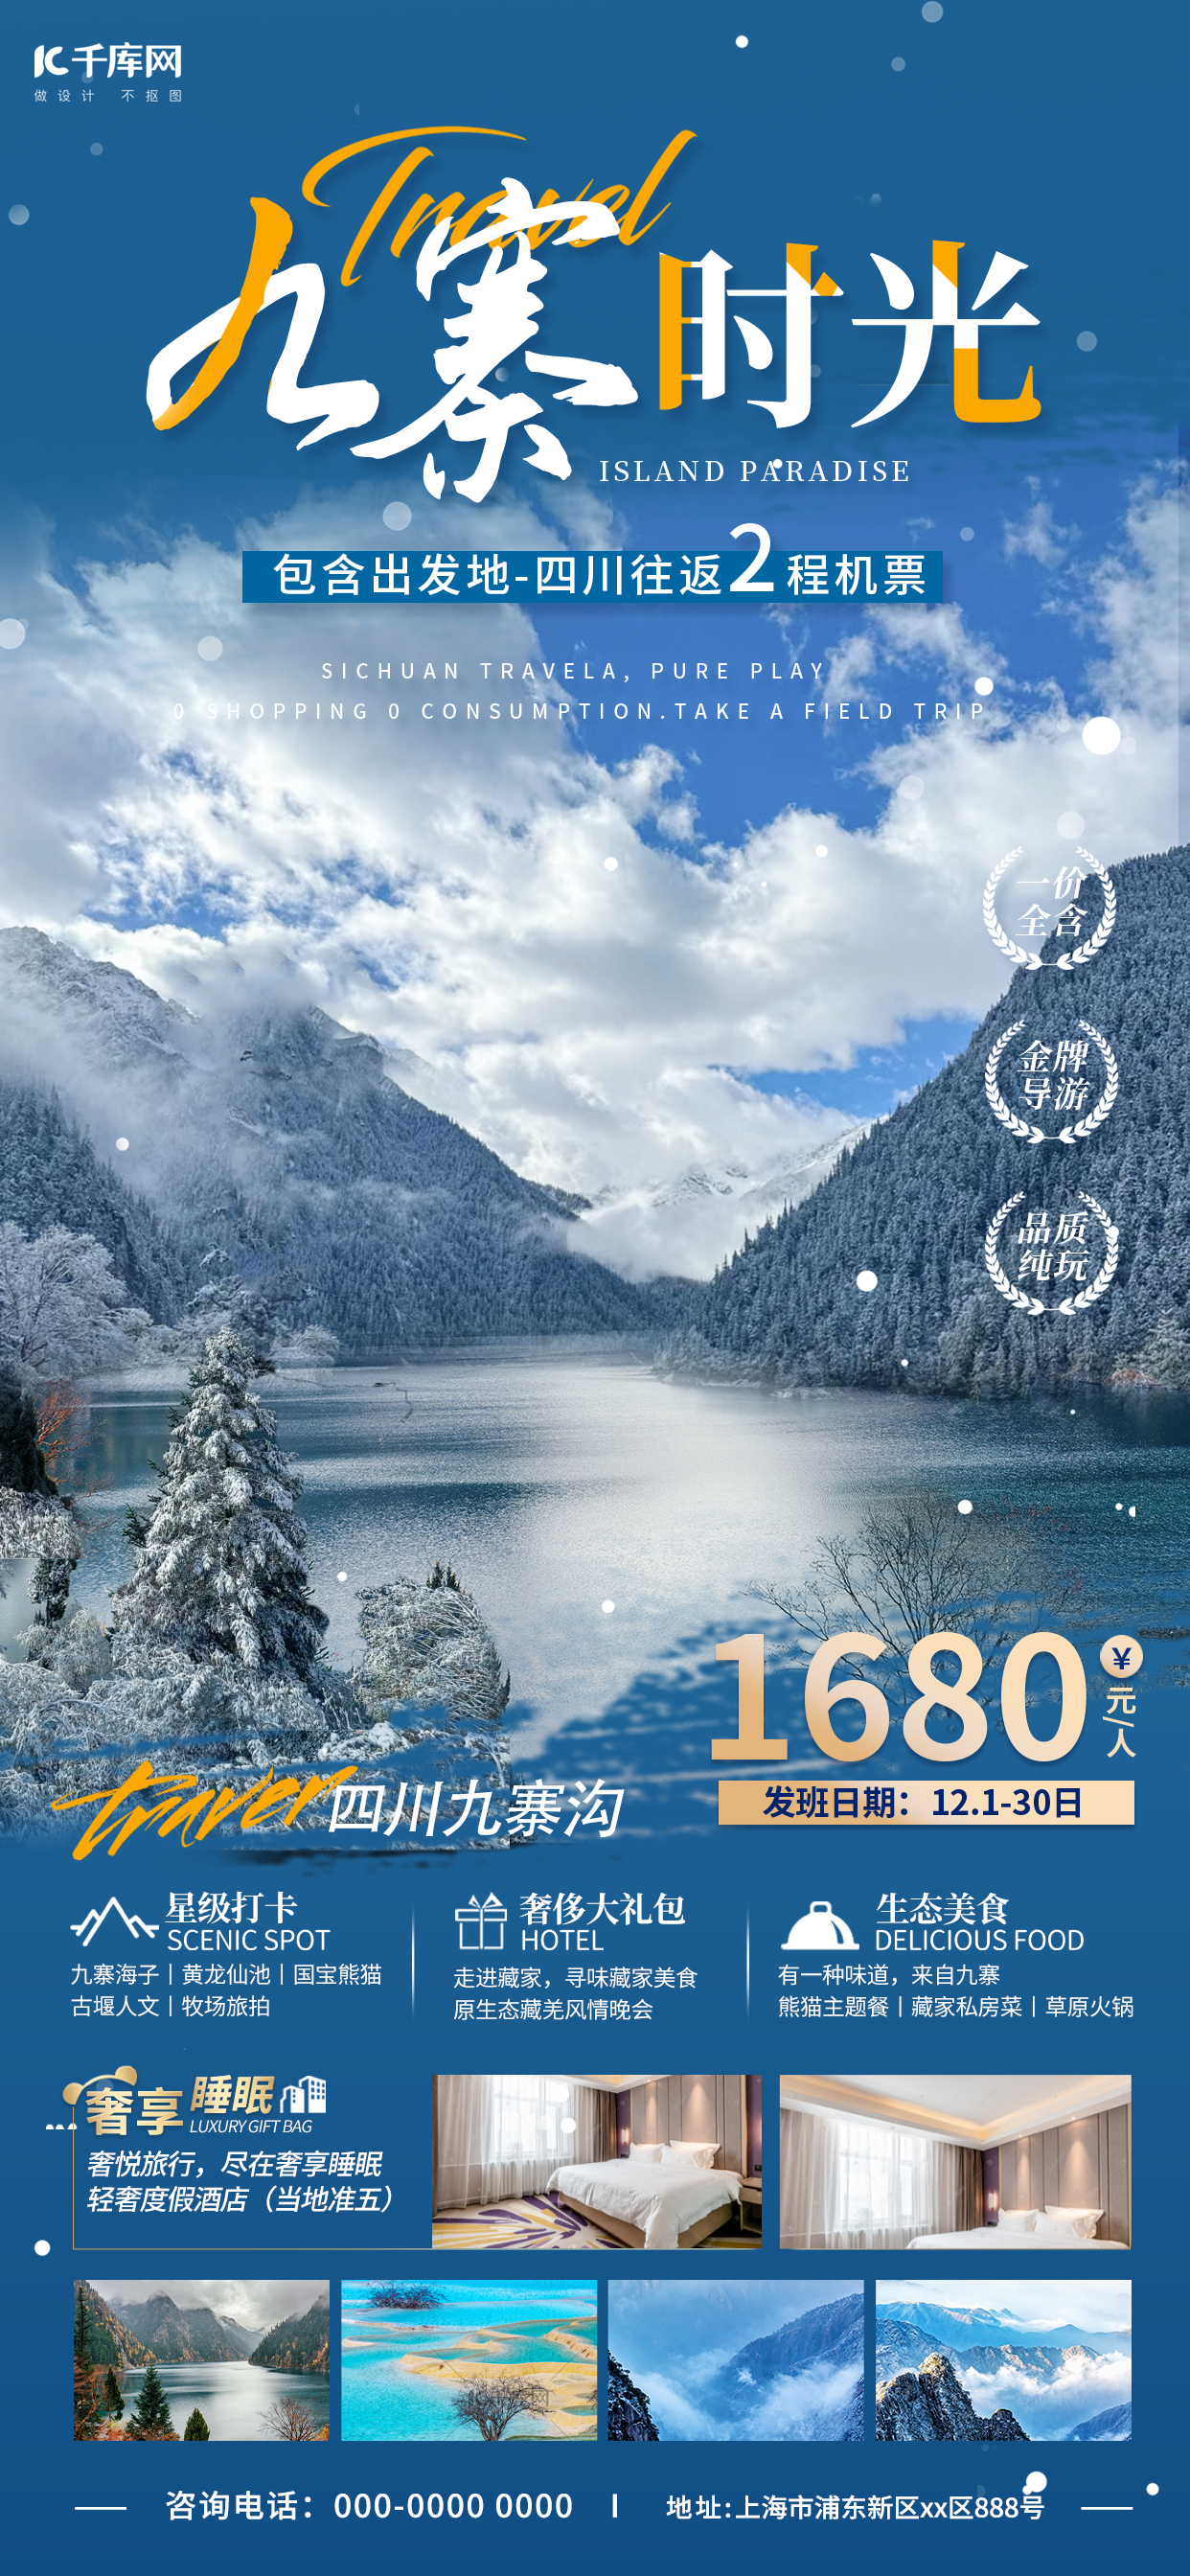 冬季旅游九寨沟蓝色简约旅游海报图片